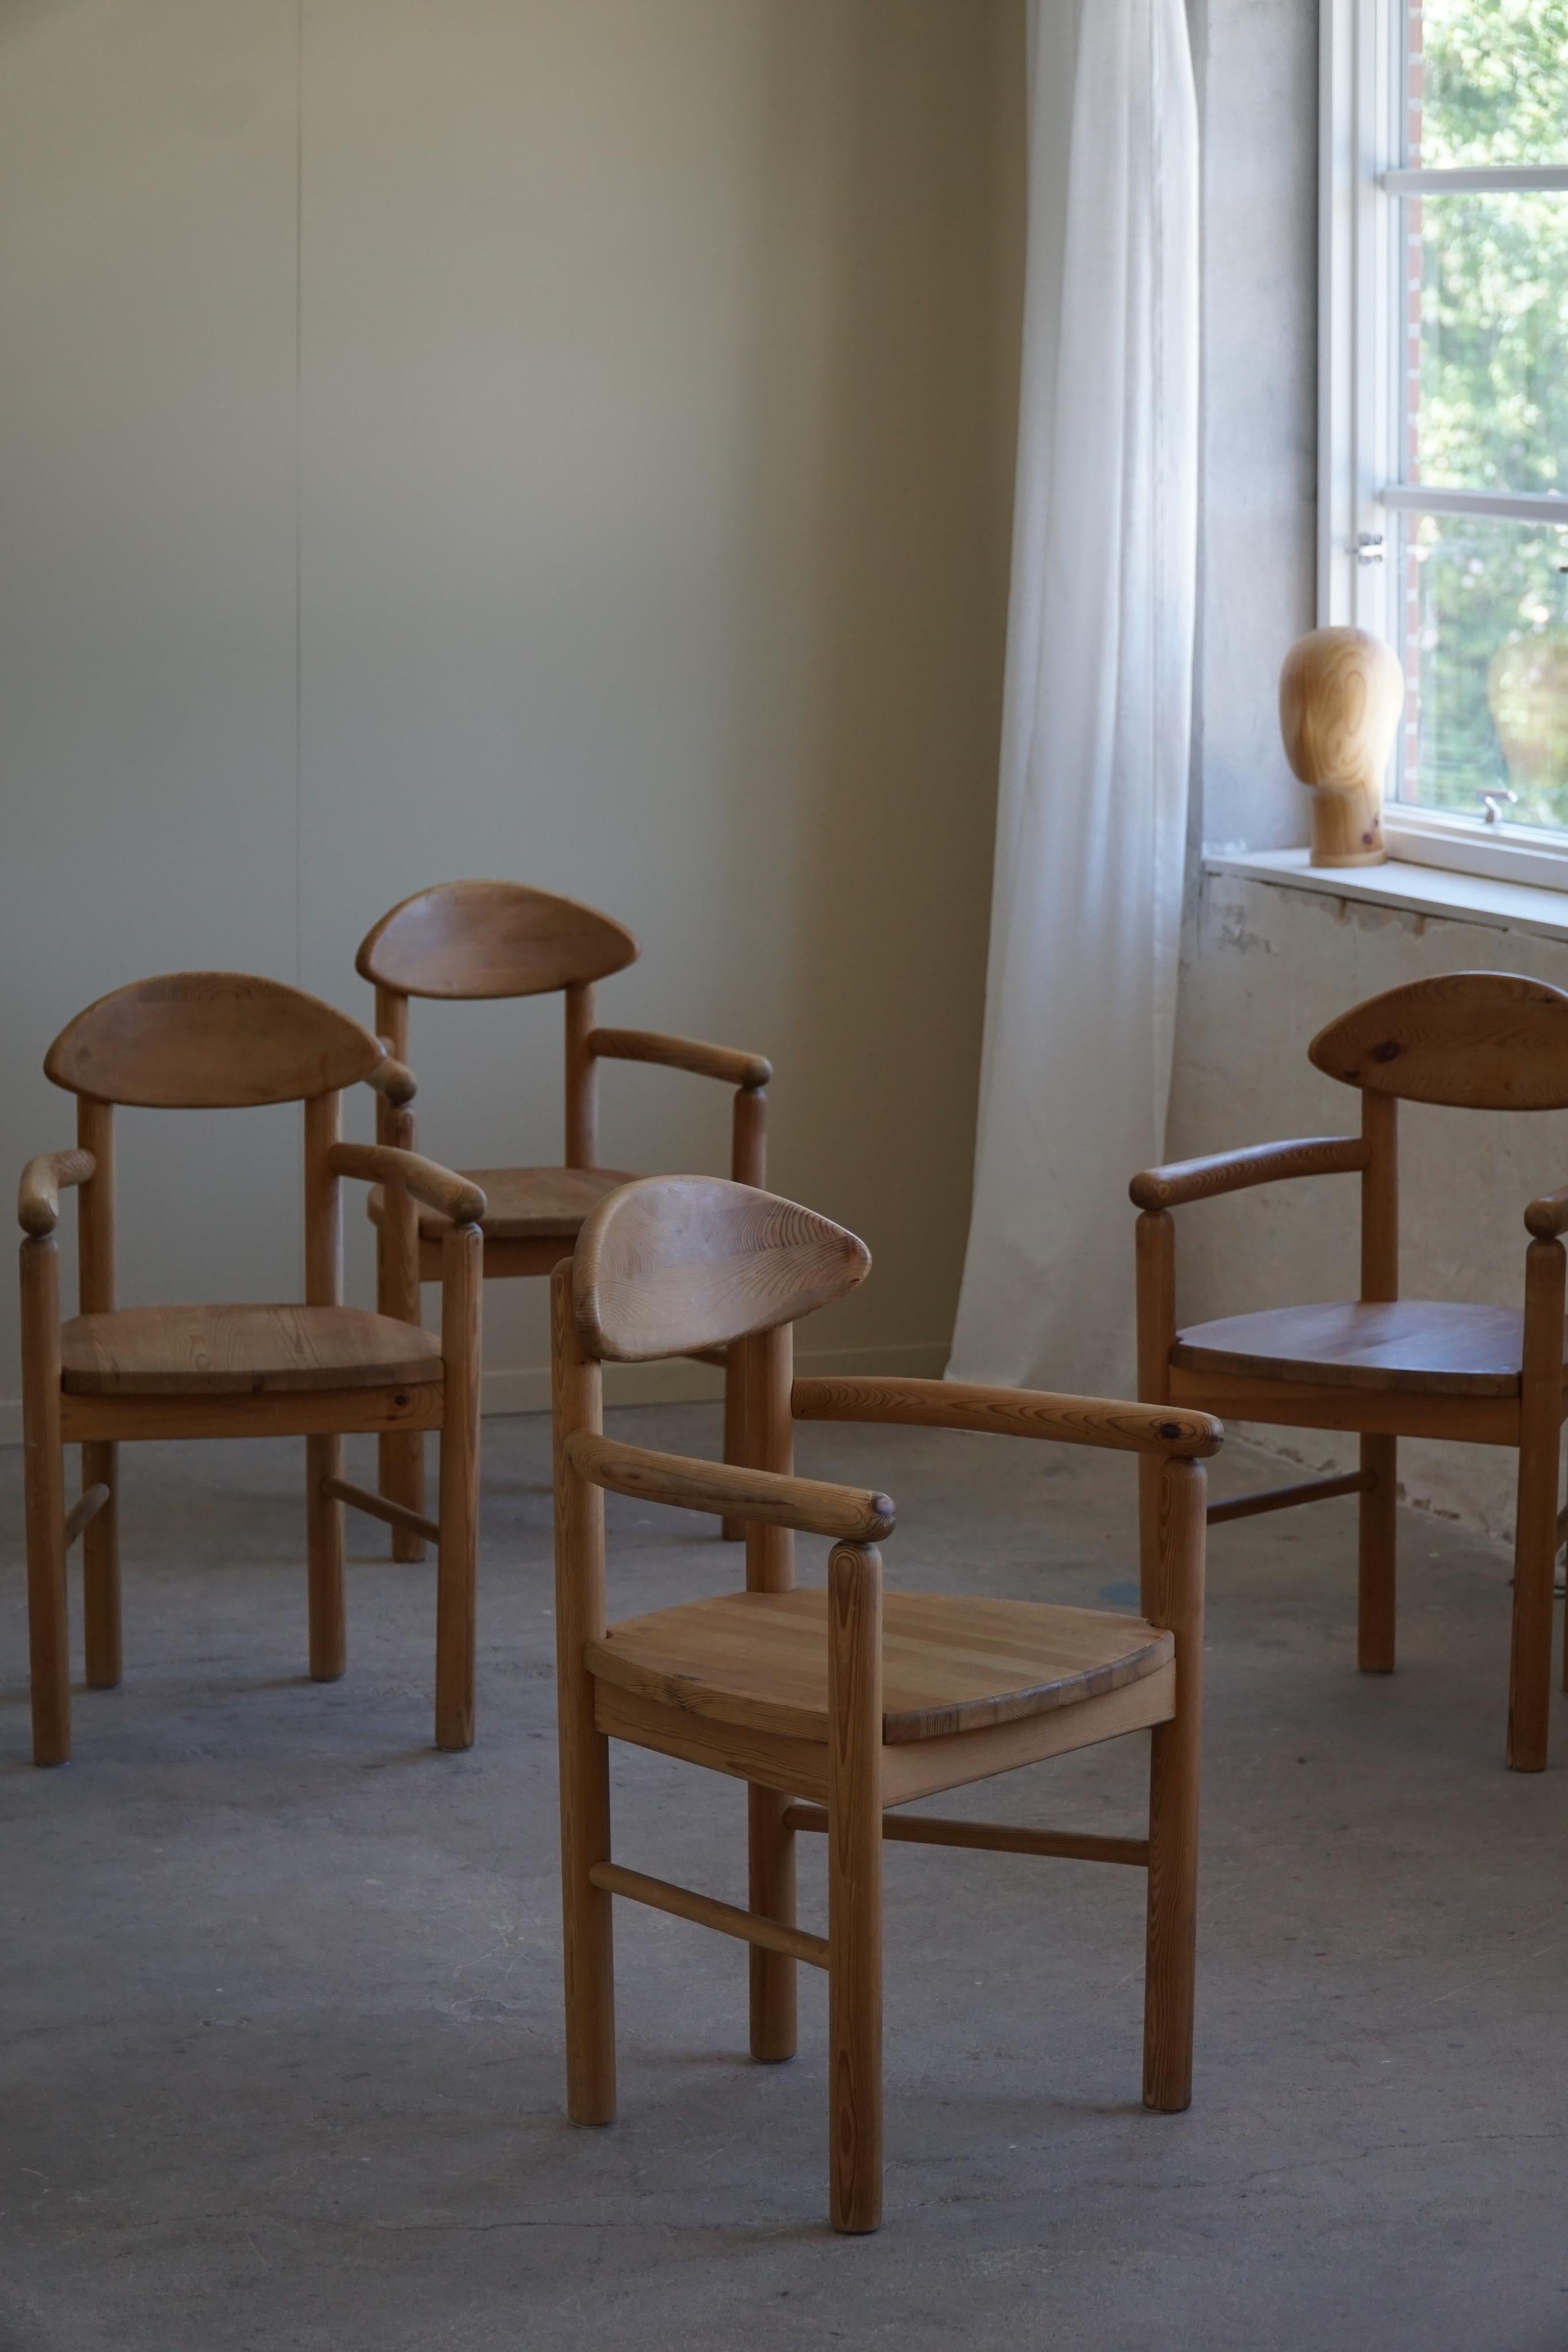 Ensemble de 6 fauteuils en pin massif. Conçu par Rainer Daumiller pour la scierie Hirtshals dans les années 1970, au Danemark. 

Un bel ensemble Brutalist du milieu du siècle qui se marie bien avec de nombreux types de styles d'intérieur. Une